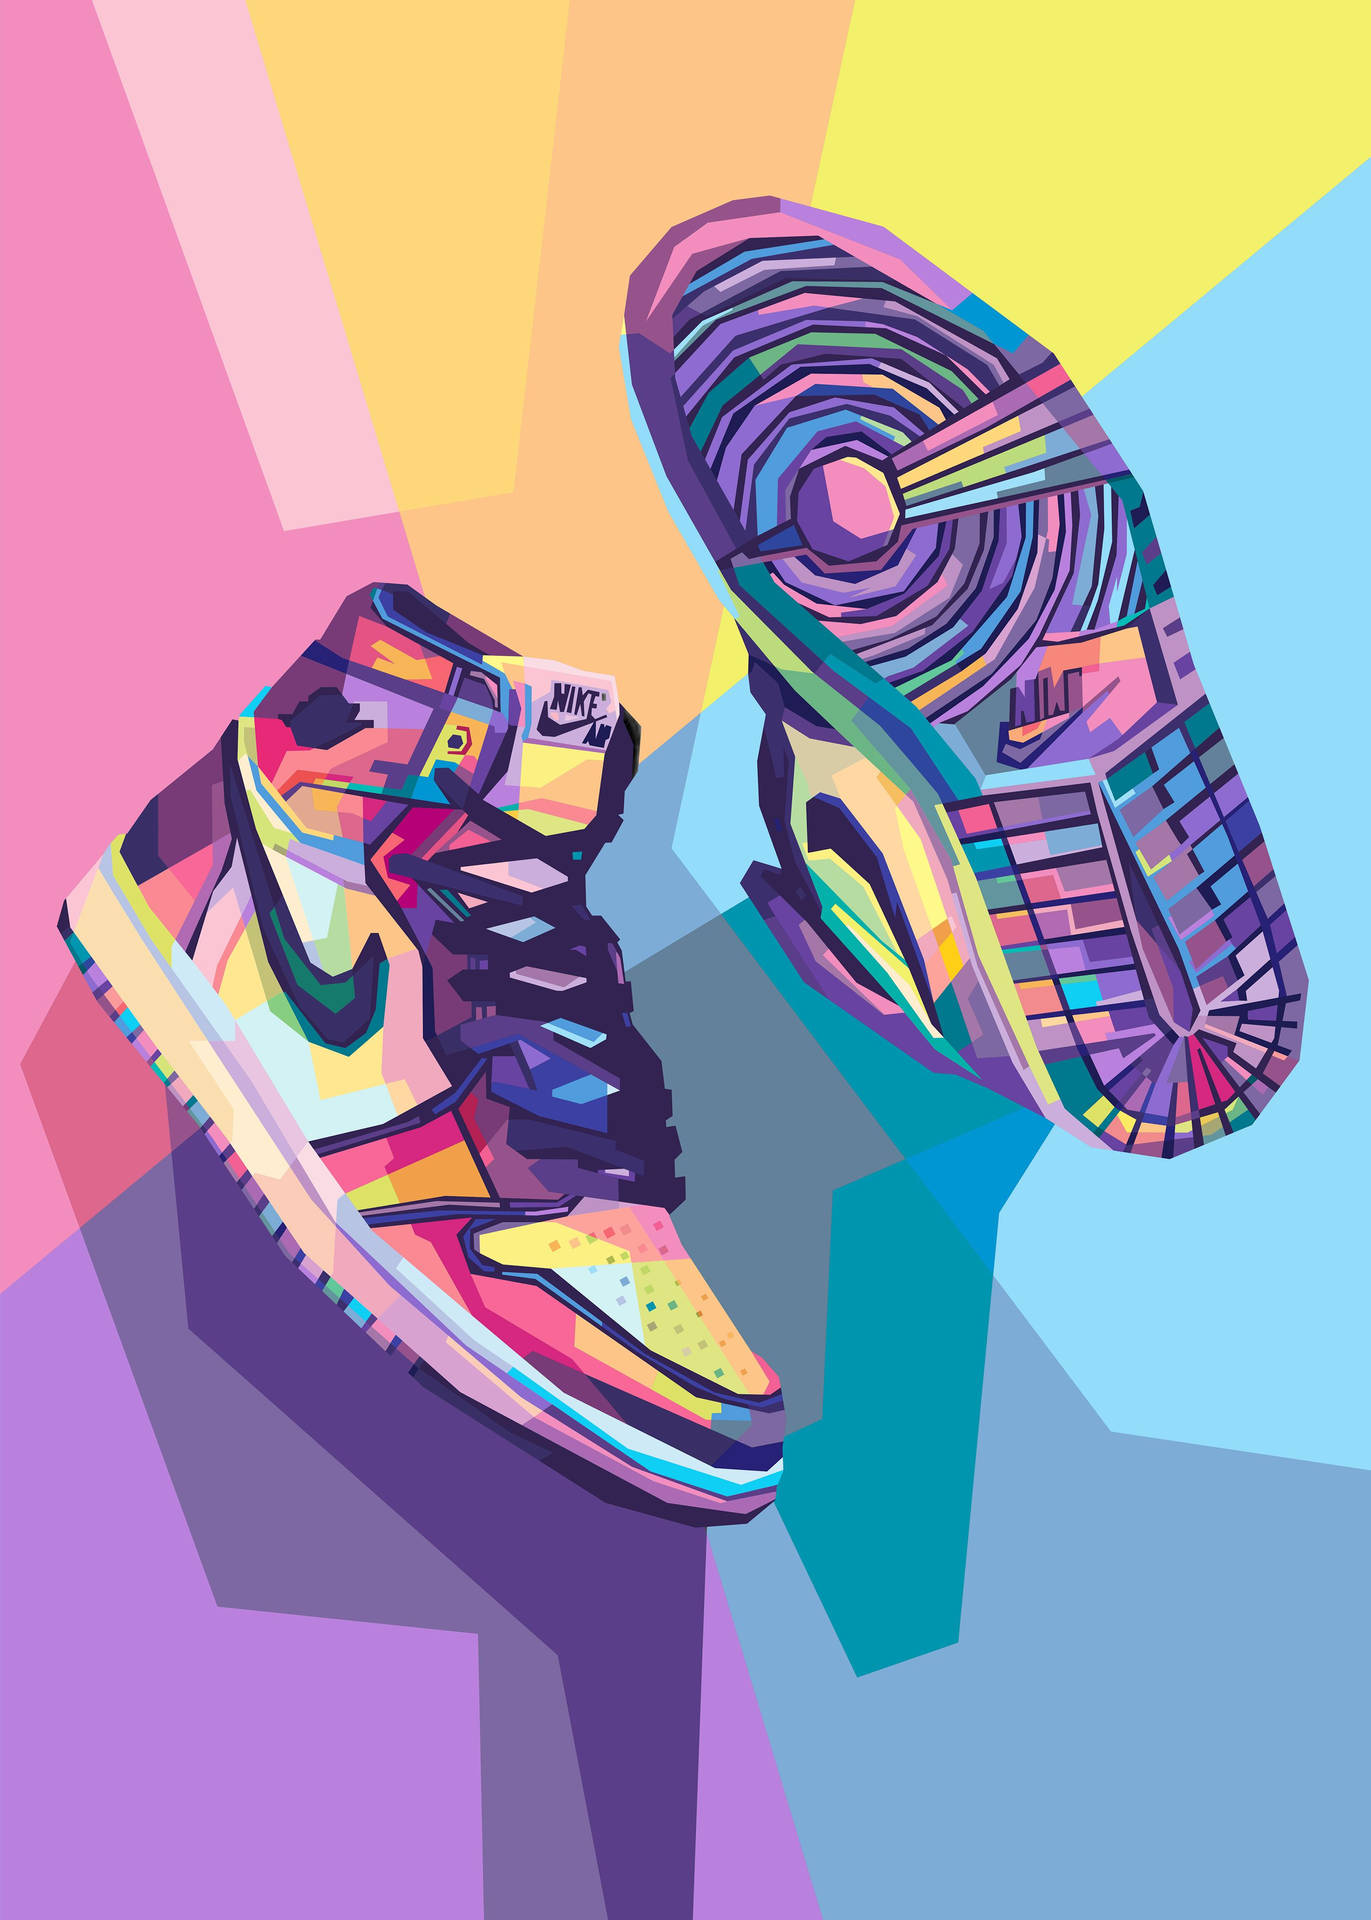 Ilustraciónabstracta De Zapatillas Nike Jordan De Colores Y Estilo Cartoon. Fondo de pantalla